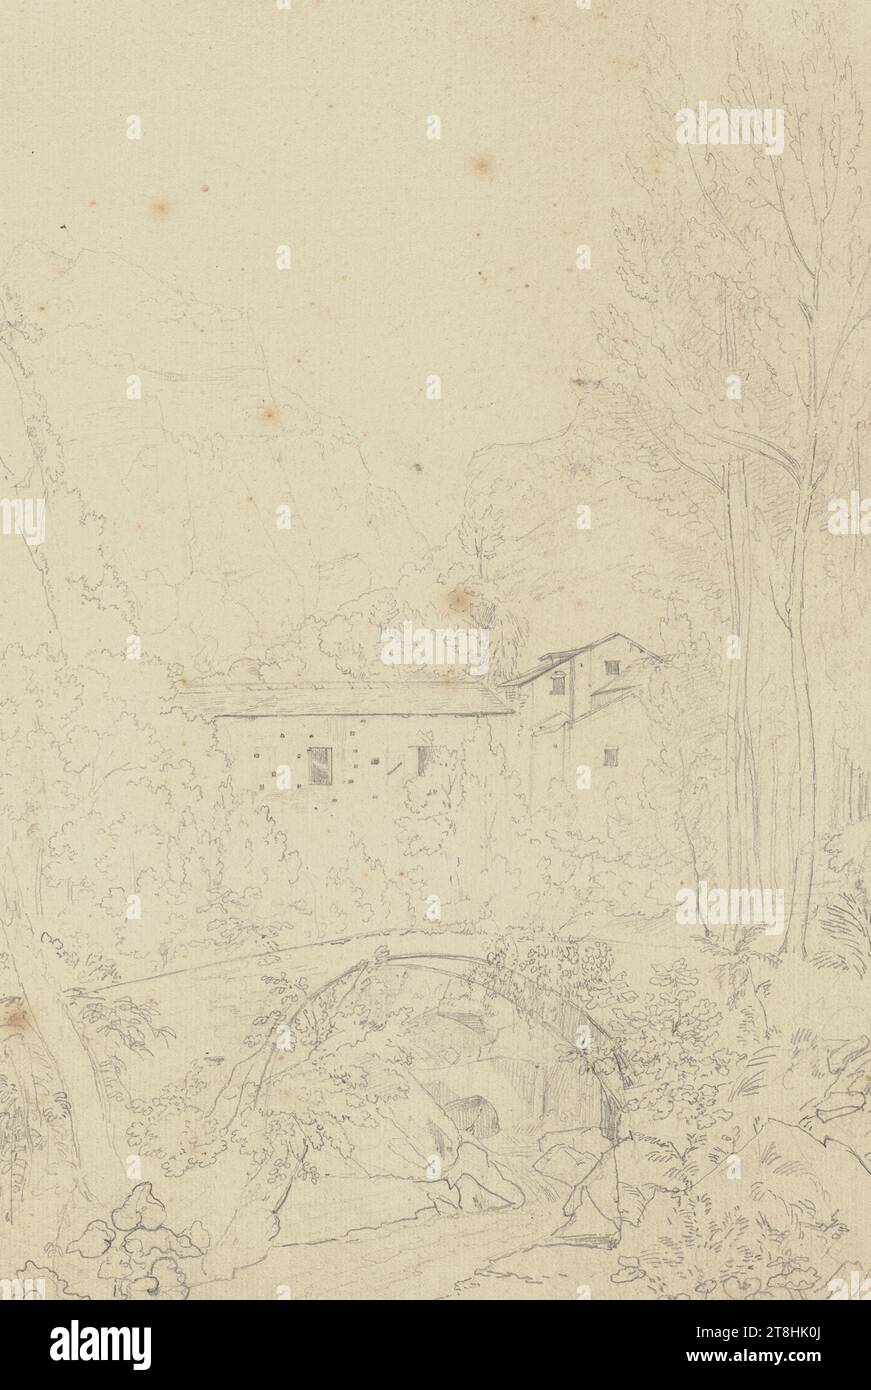 JOHANNES THOMAS, paesaggio vicino Amalfi, luglio 1823, foglio, 335 x 222 mm, matita su carta, paesaggio vicino Amalfi, JOHANNES THOMAS, XIX SECOLO, DISEGNO, matita su carta, MISCELA GRAFITE-ARGILLA, CARTA, DISEGNO A MATITA, TEDESCO, STUDIO DEL PAESAGGIO, STUDIO DI VIAGGIO, datato e inciso in basso a destra, a matita, Amalfi 23 luglio Foto Stock